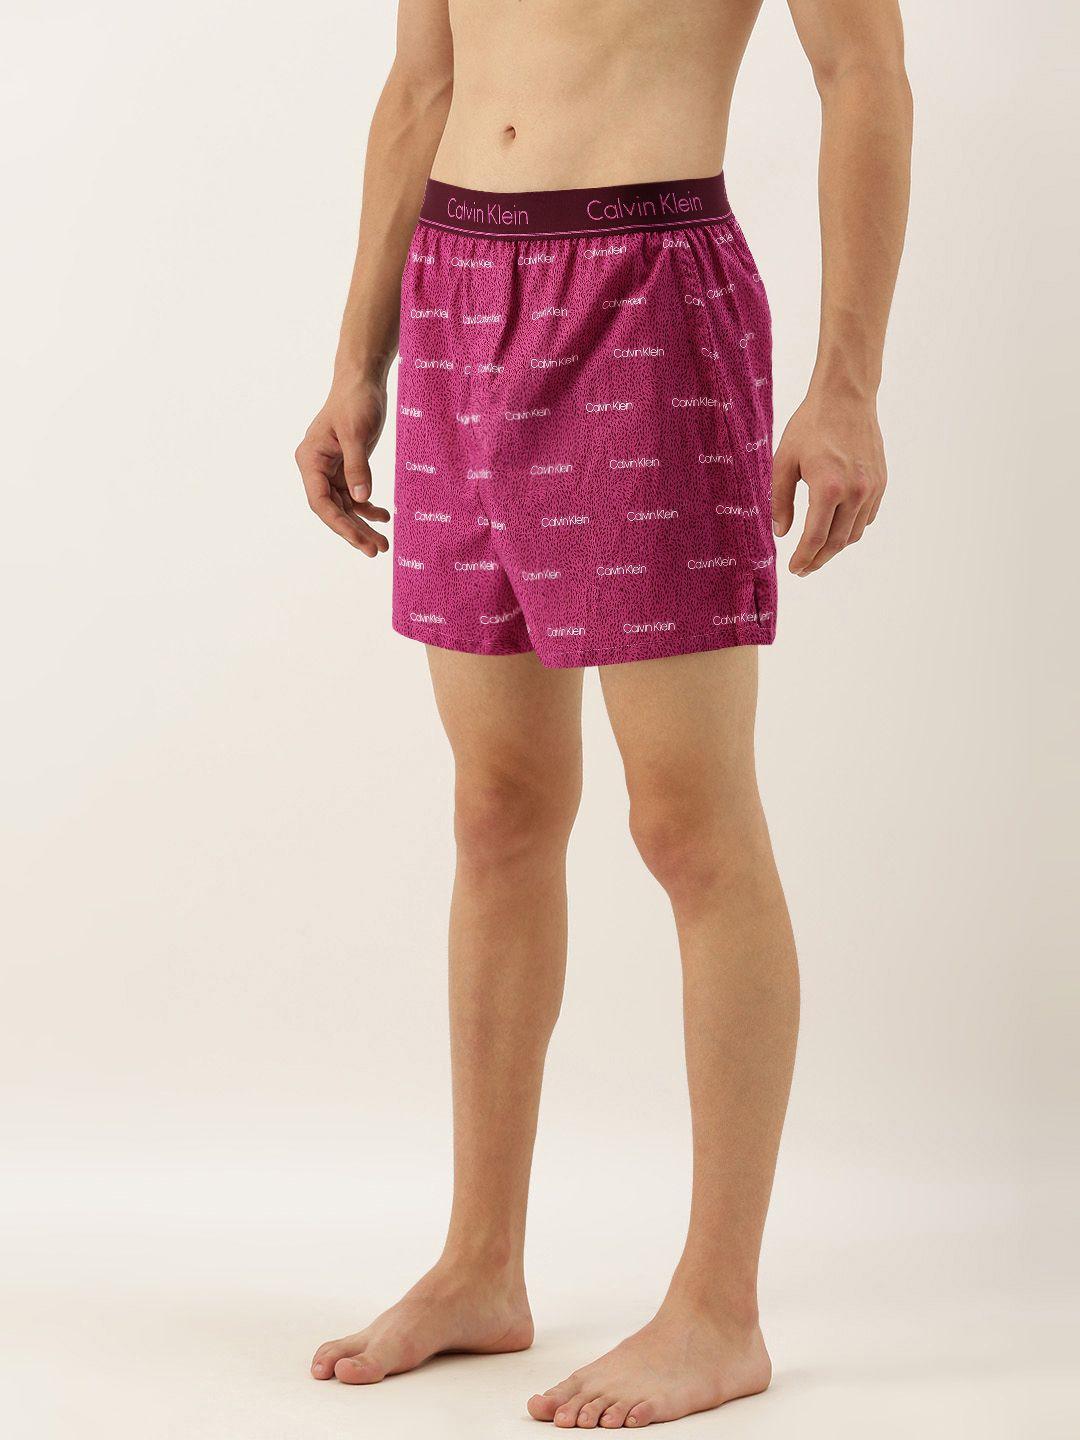 calvin klein underwear men pink & maroon printed pure cotton boxers nb1524bm2